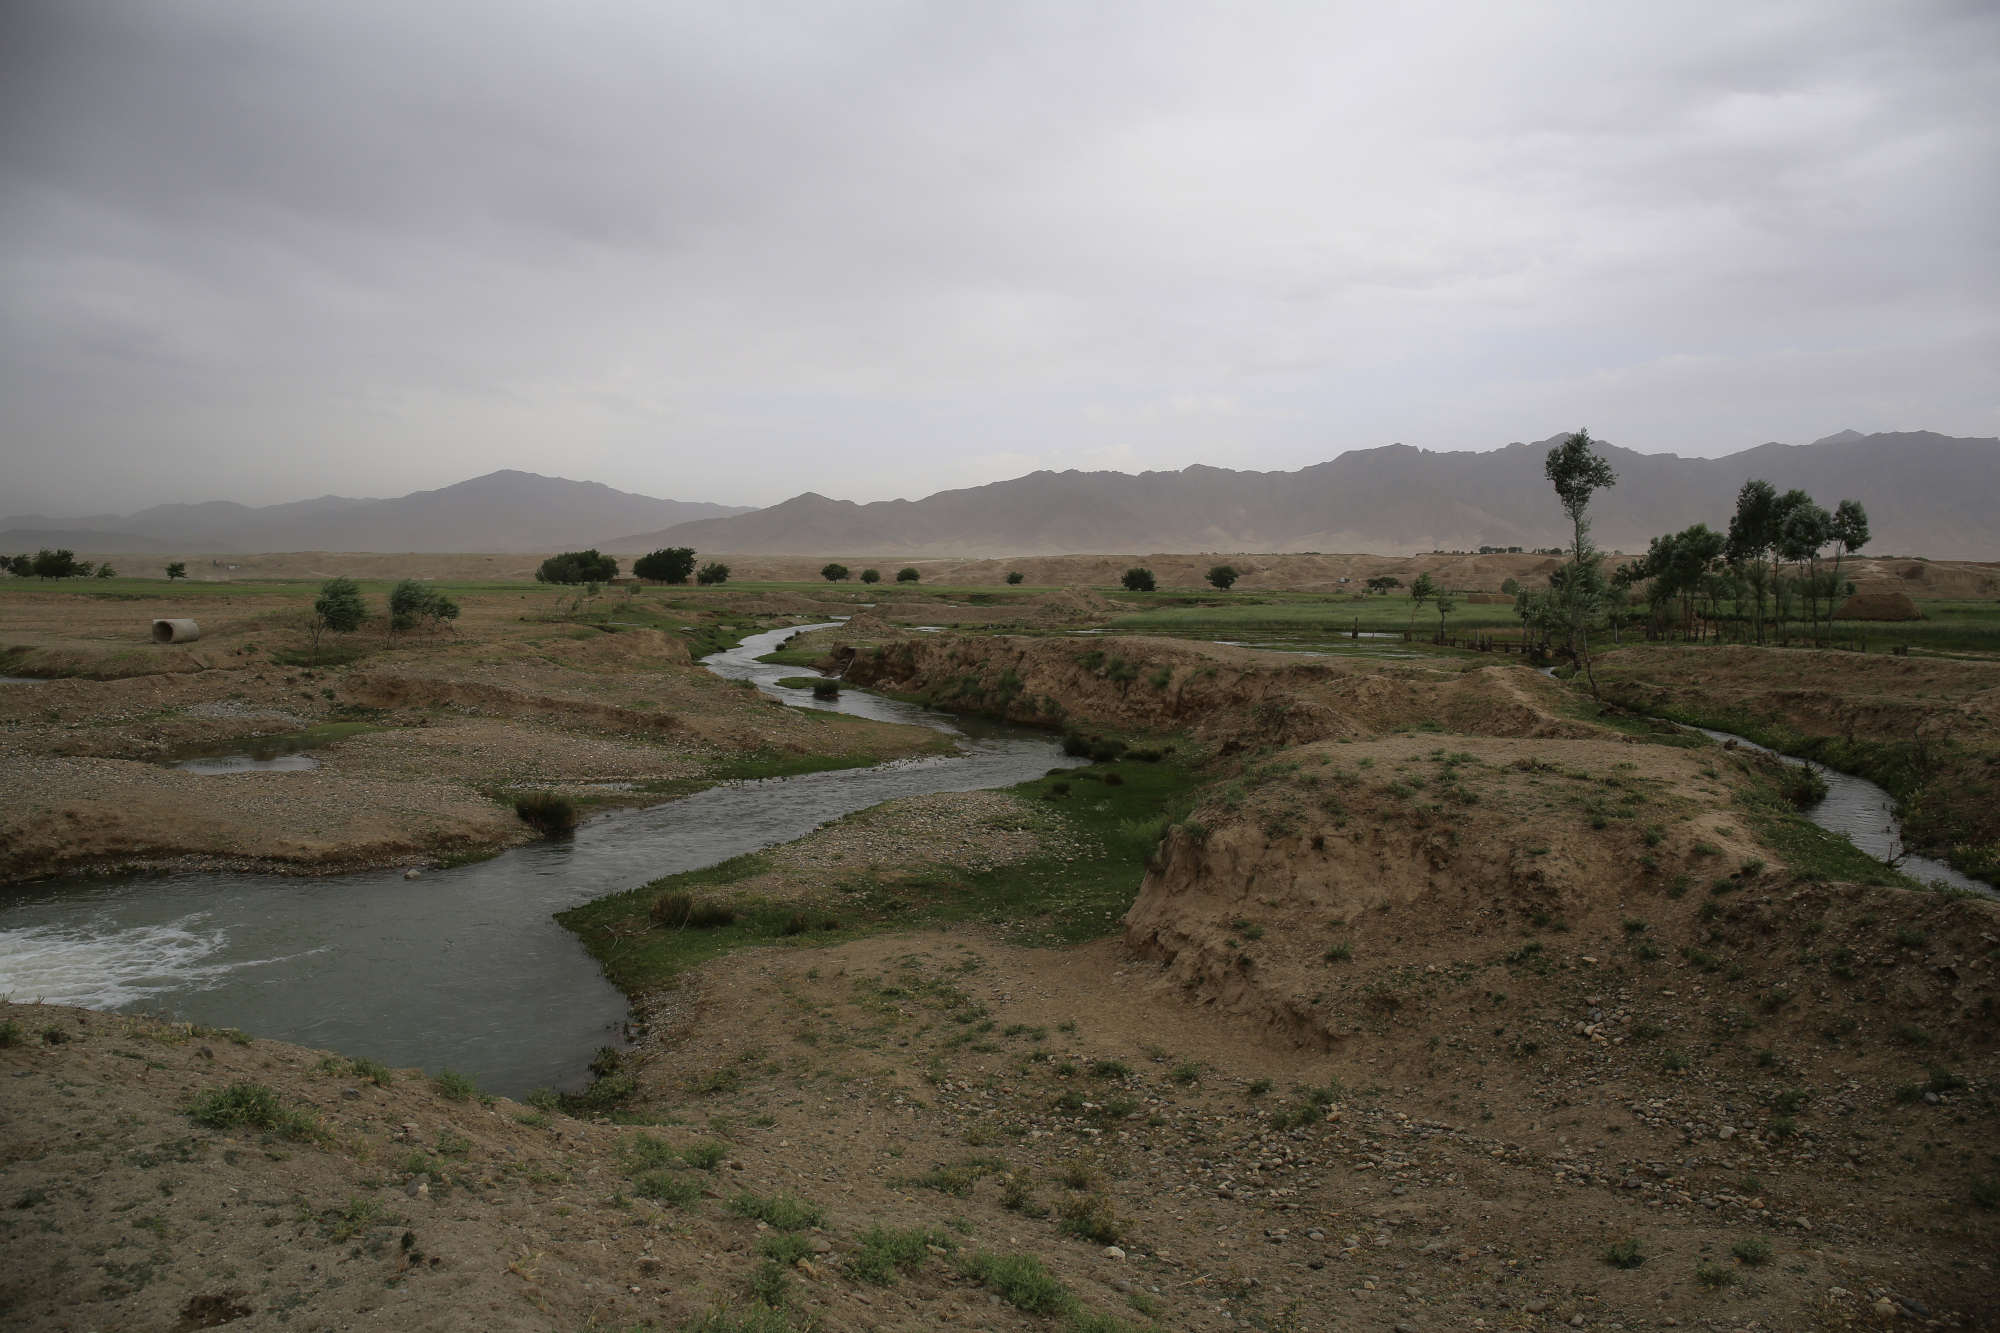 A river that runs through Bagram airfield.